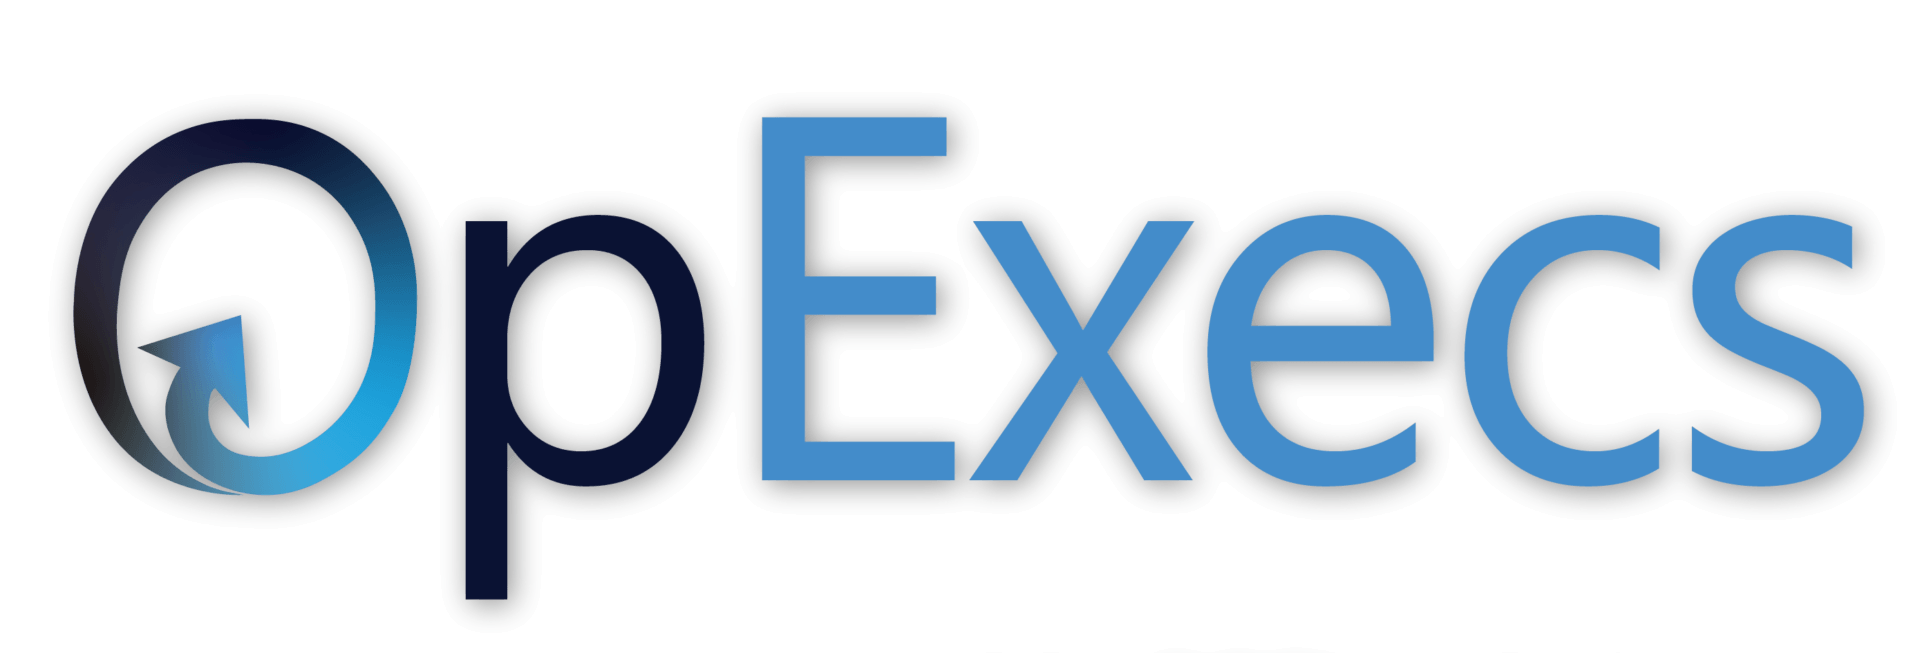 OpExecs Logo no tagline